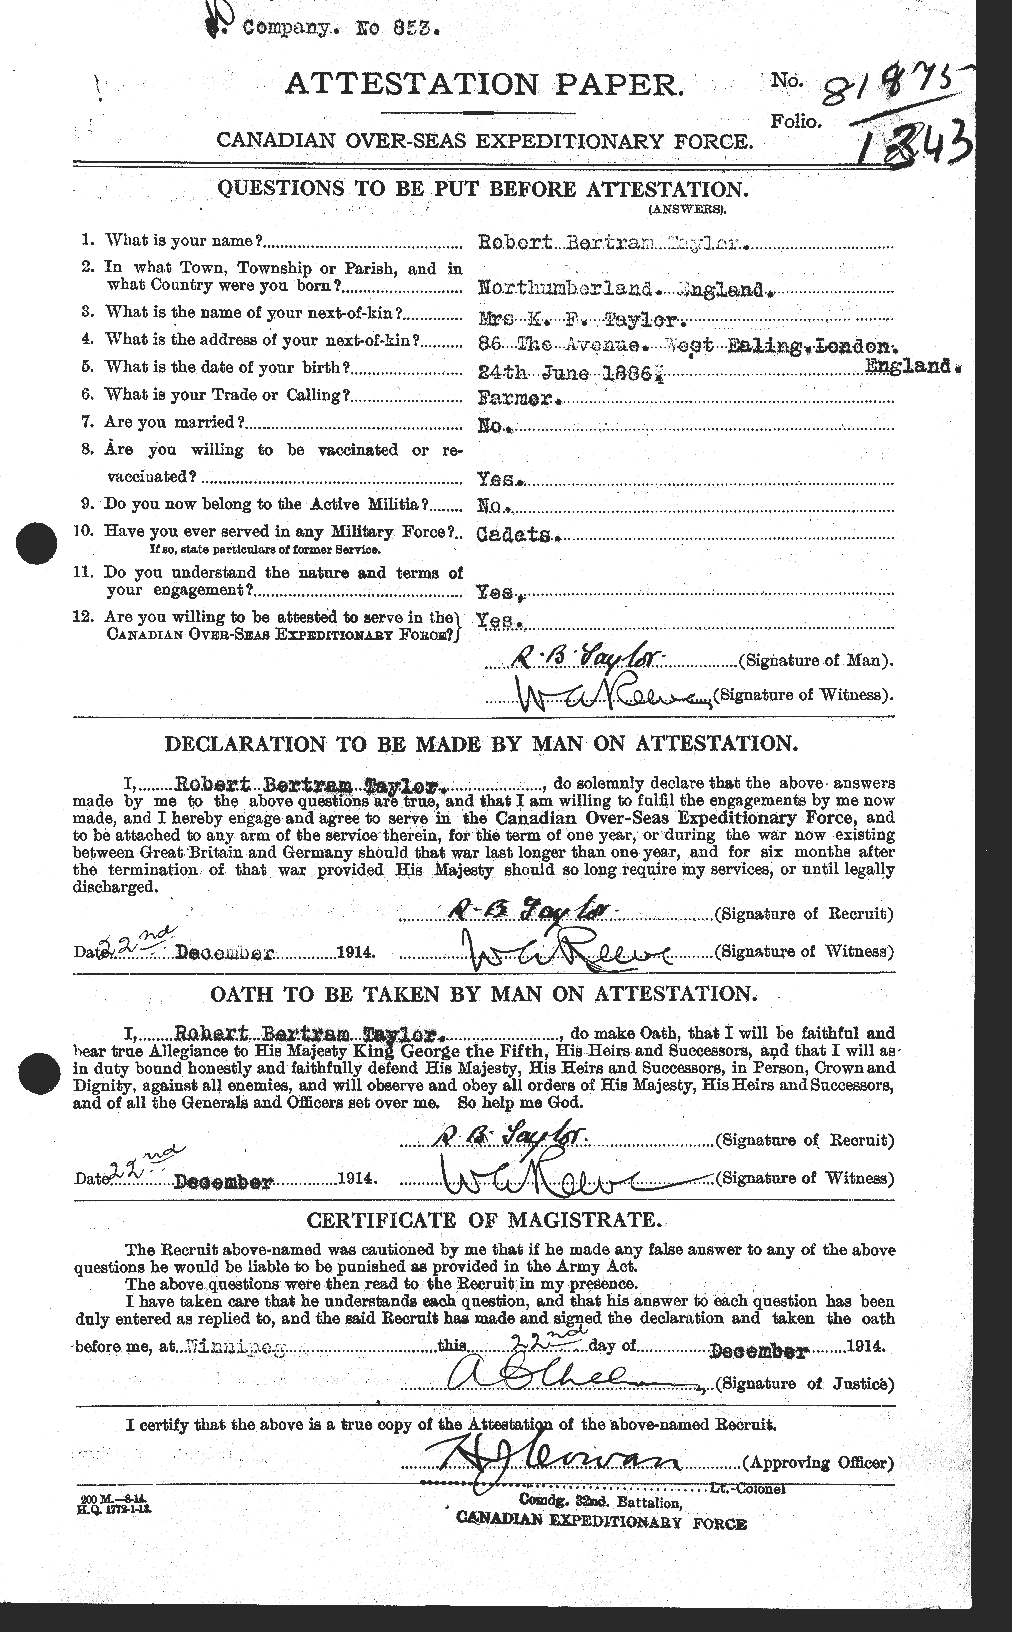 Dossiers du Personnel de la Première Guerre mondiale - CEC 627461a